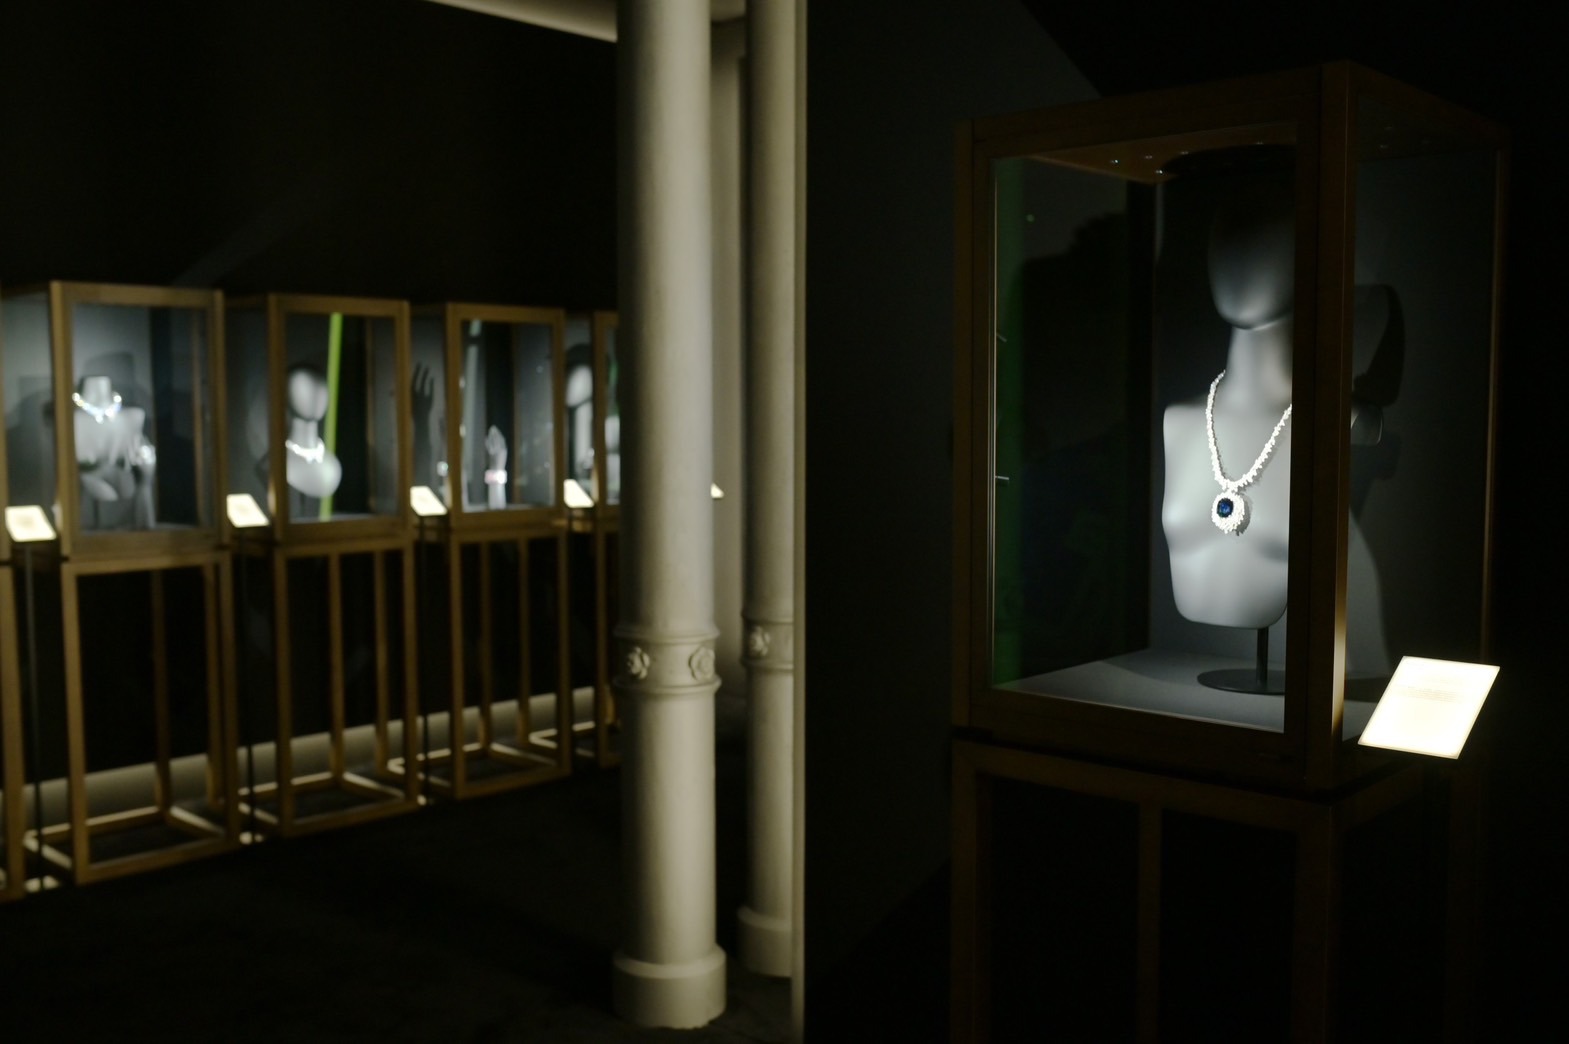 <u>DAMIANI</u>百年慶典 百件高級珠寶米蘭博物館全球首展